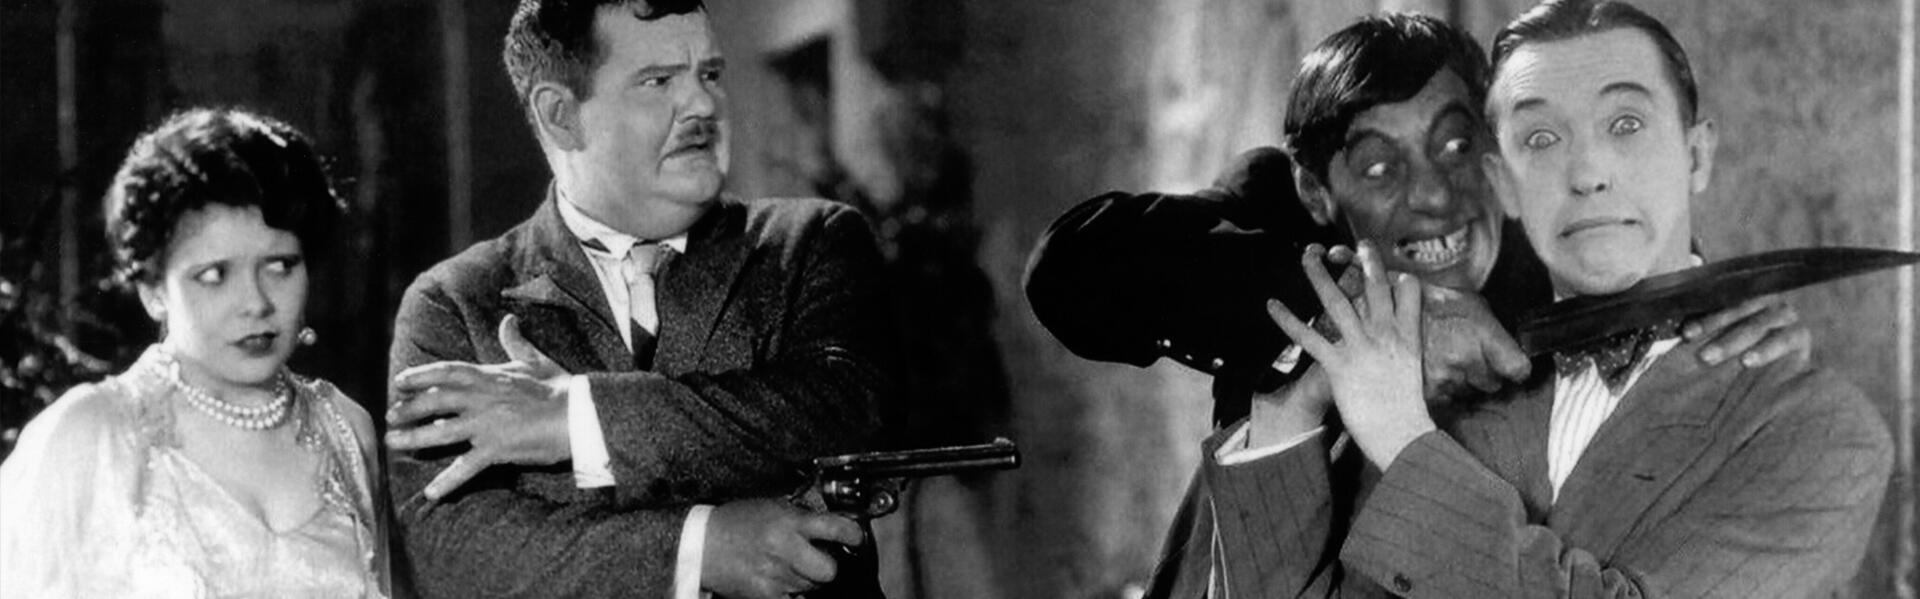 Ciné Concert - Laurel & Hardy